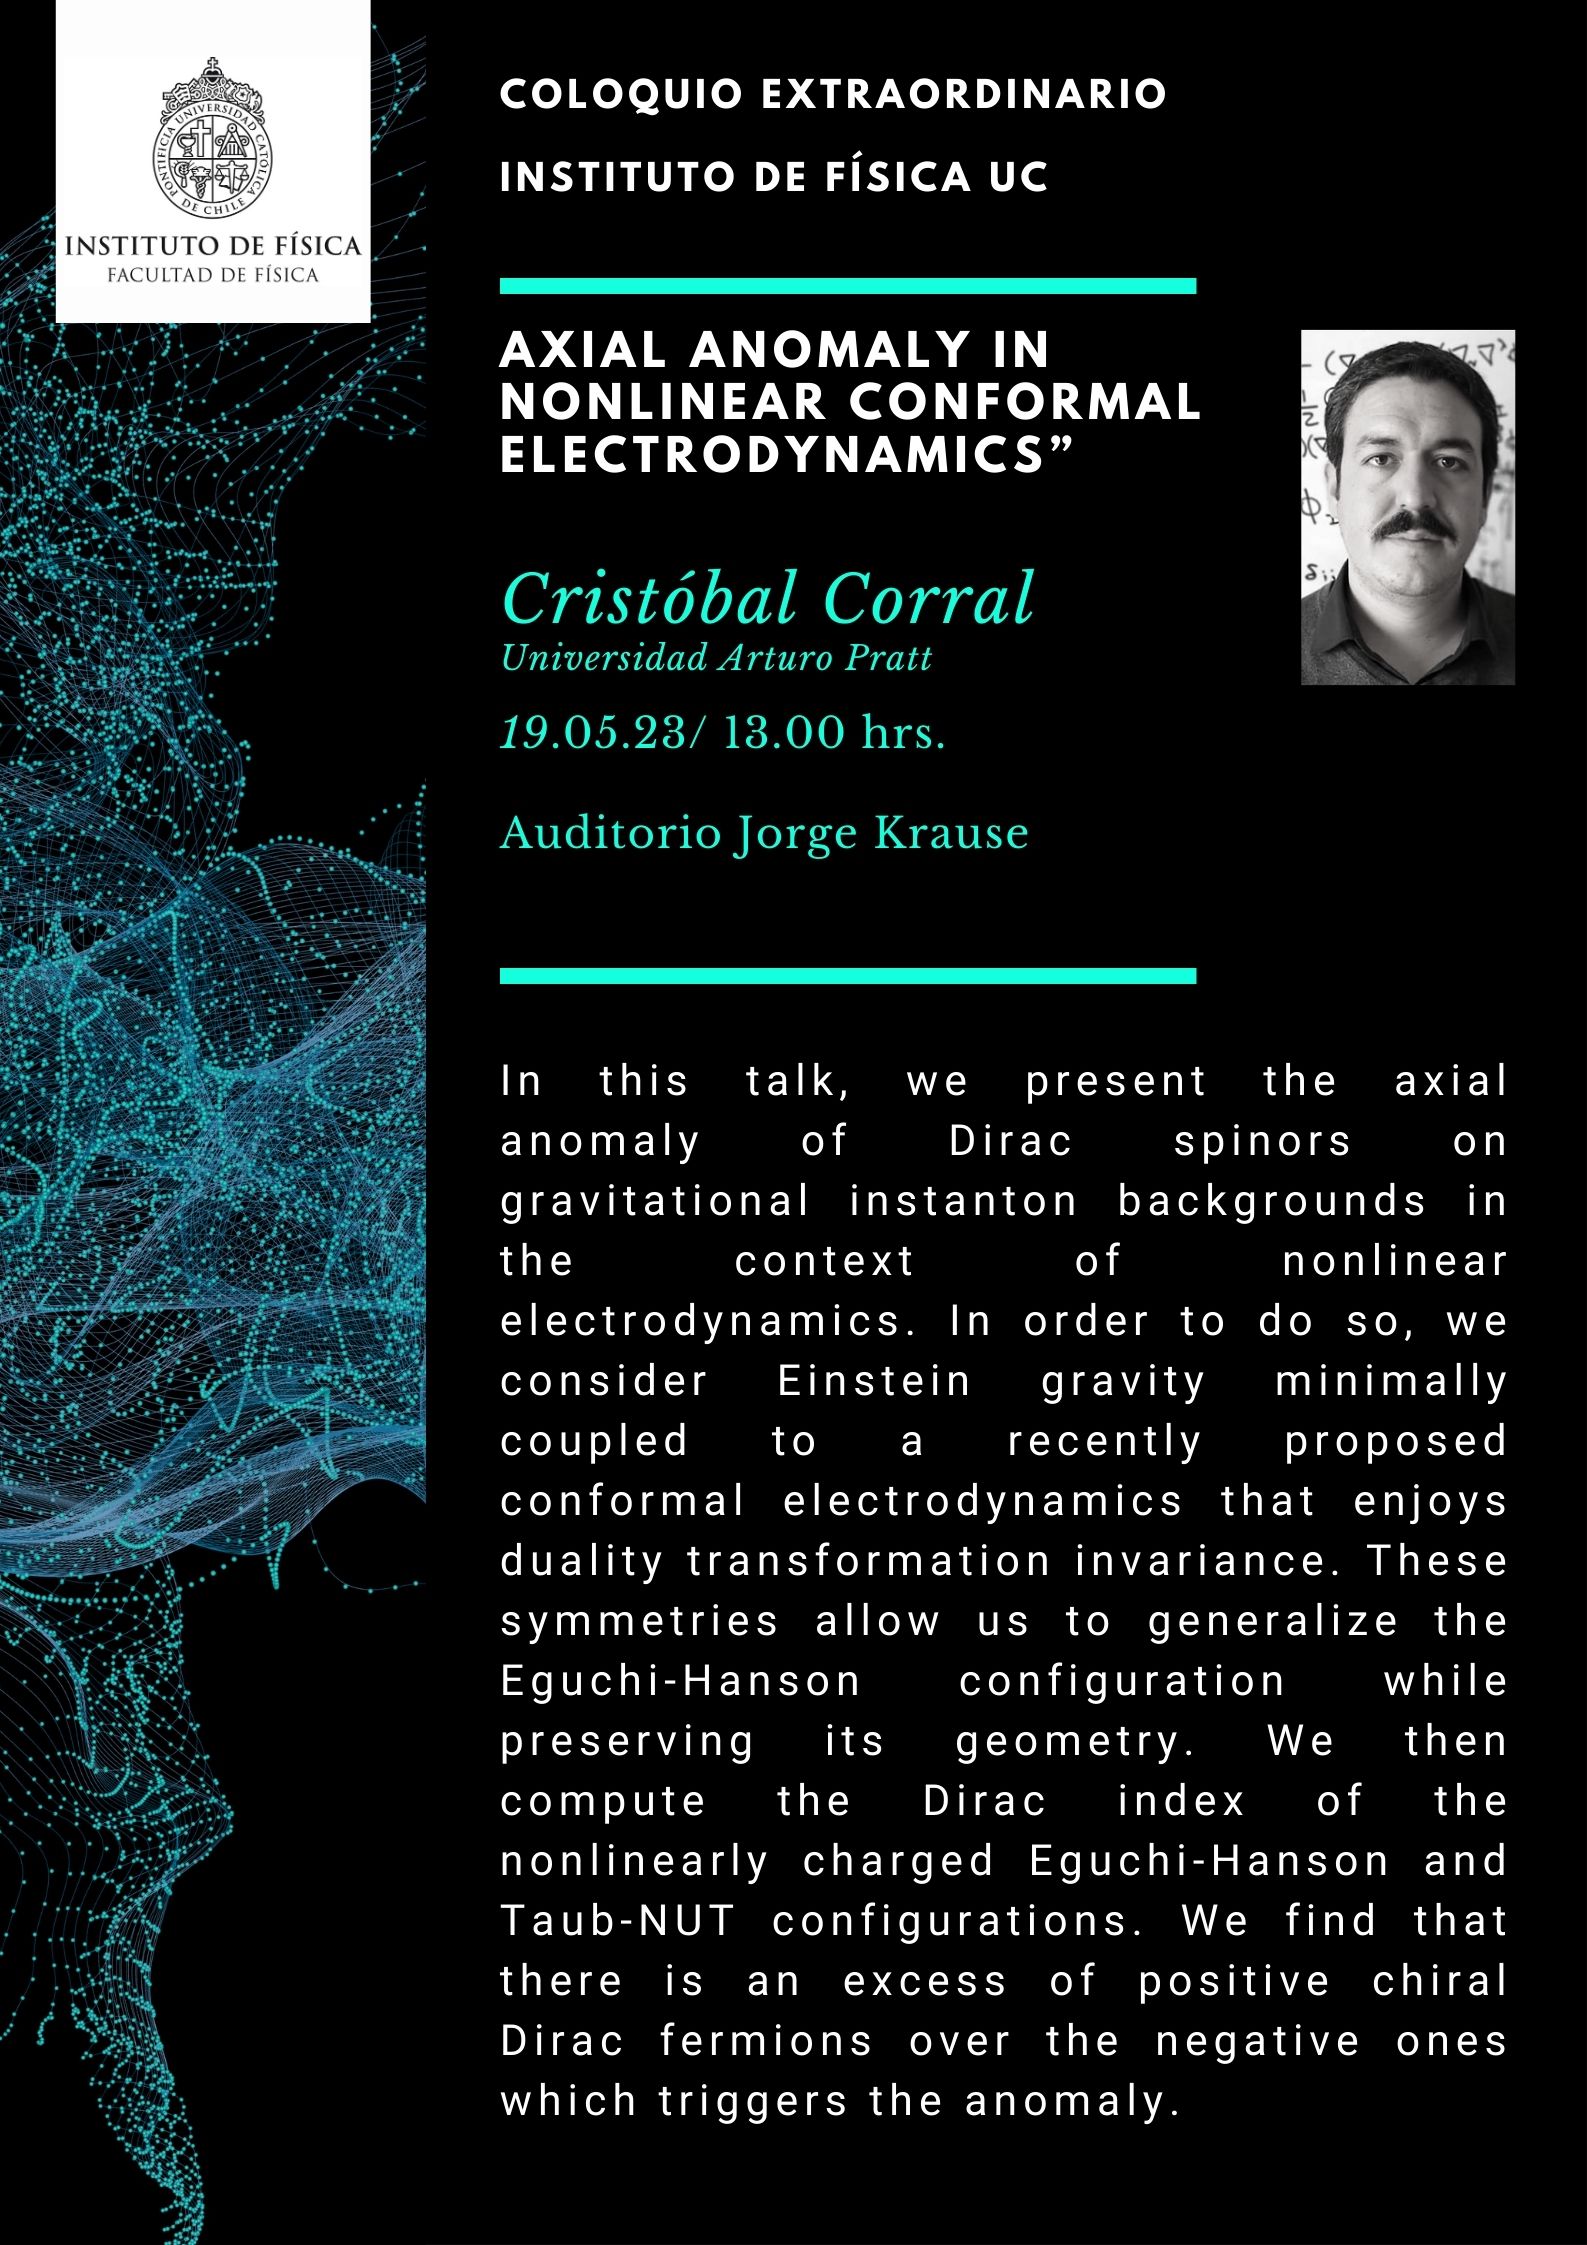 Invitación a coloquio extraordinario &quot;Axial anomaly in nonlinear conformal electrodynamics&quot; por Cristóbal Corral (viernes 19 de mayo, 13.00. hrs.)